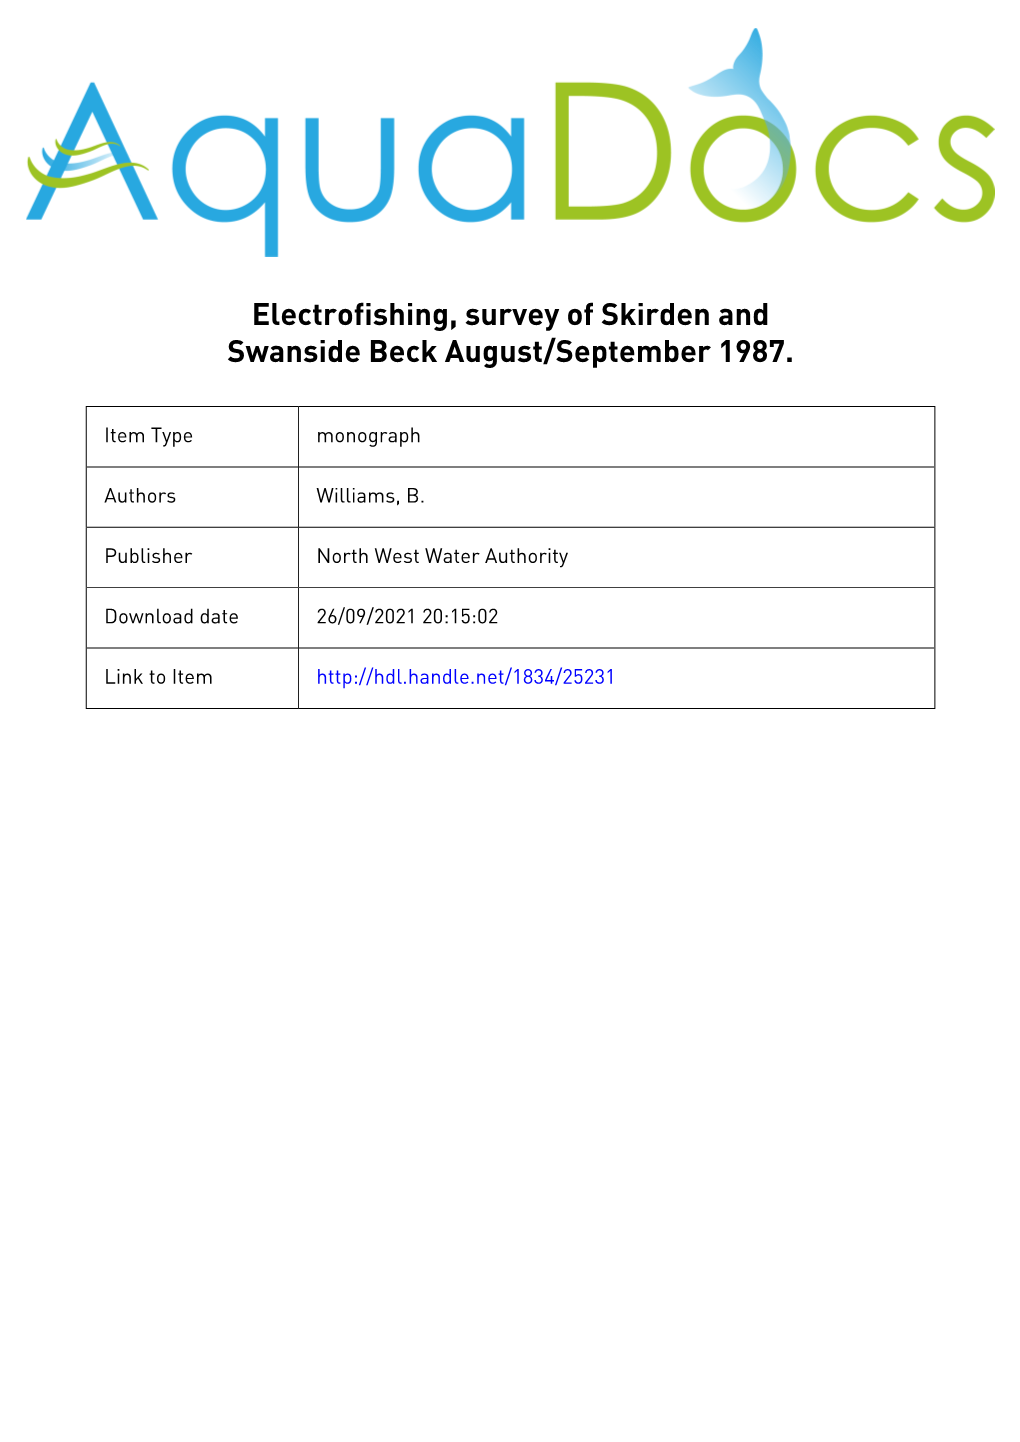 Subject Electrofishing, Survey of Skirden and Swanside Beck August/September 1987